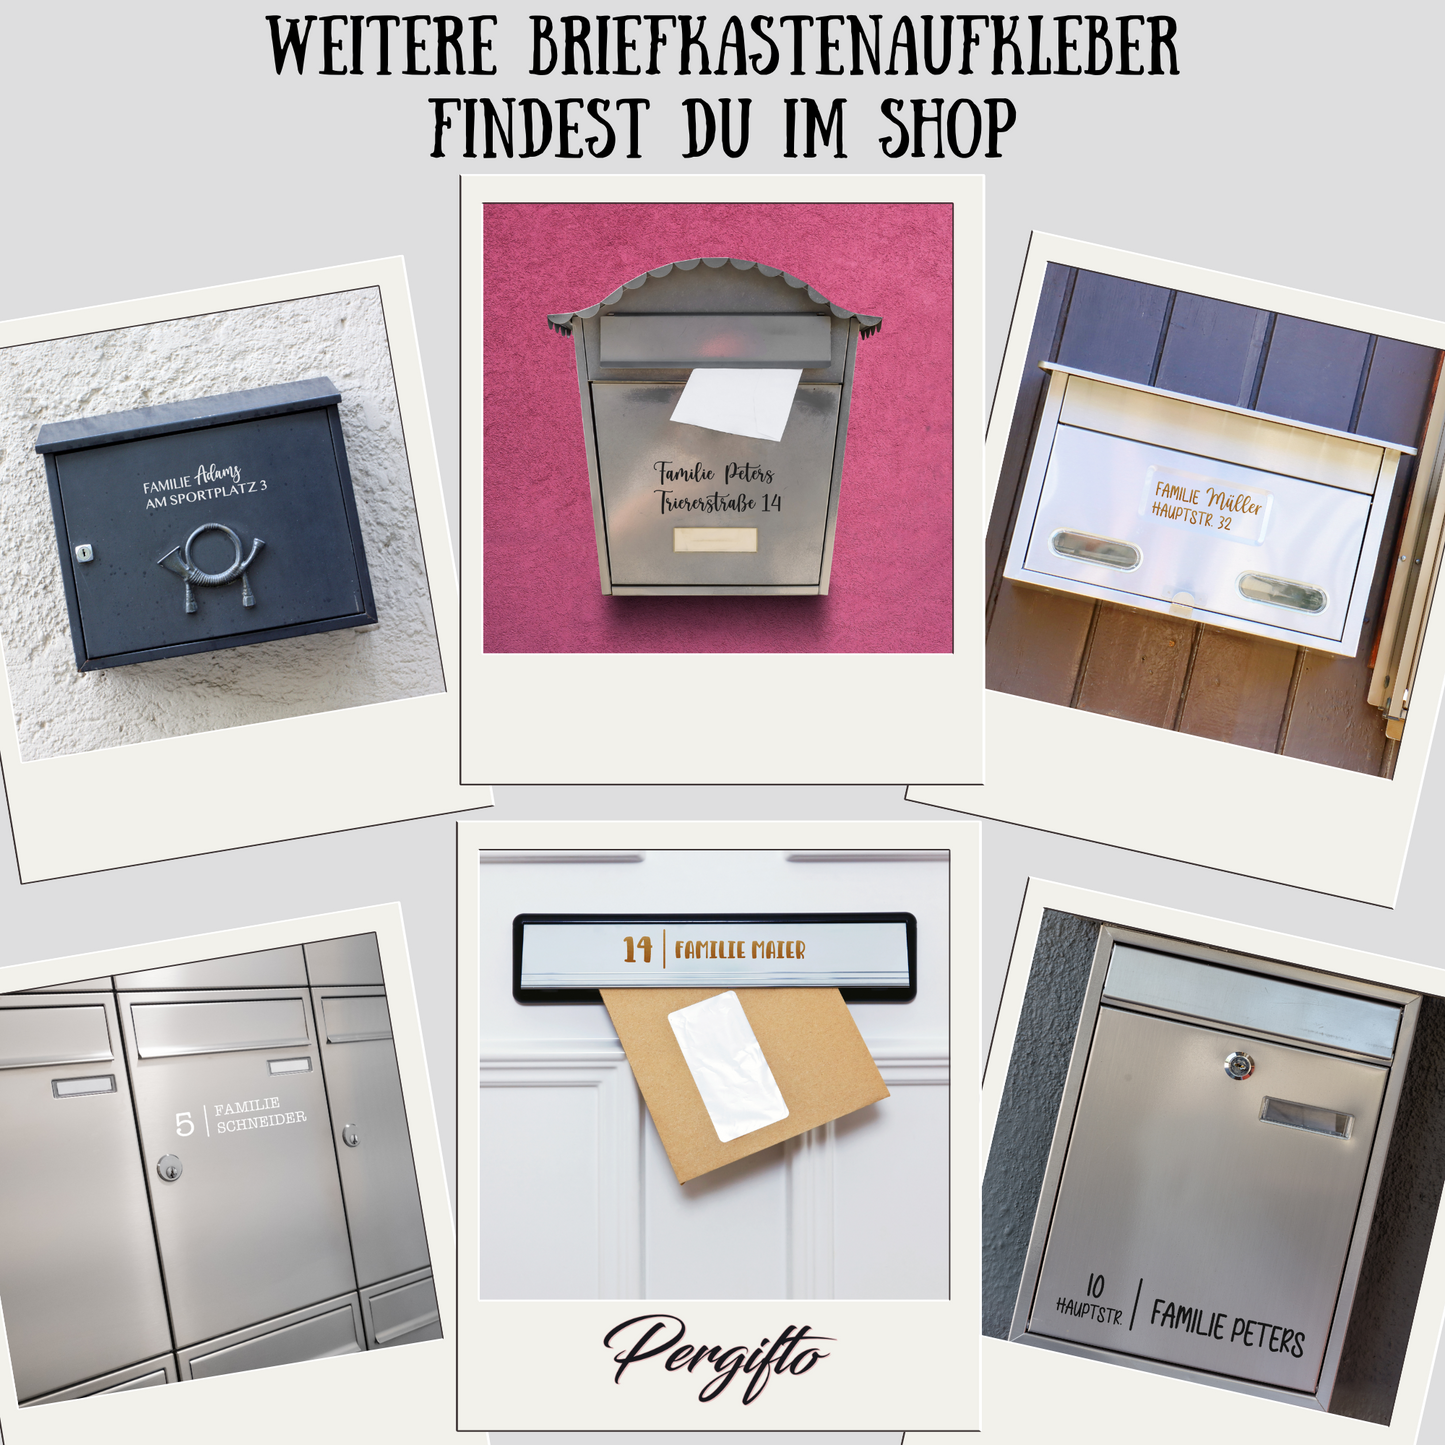 Briefkasten Aufkleber Namensschild - Familienname - Straße - Hausnumme –  Pergifto